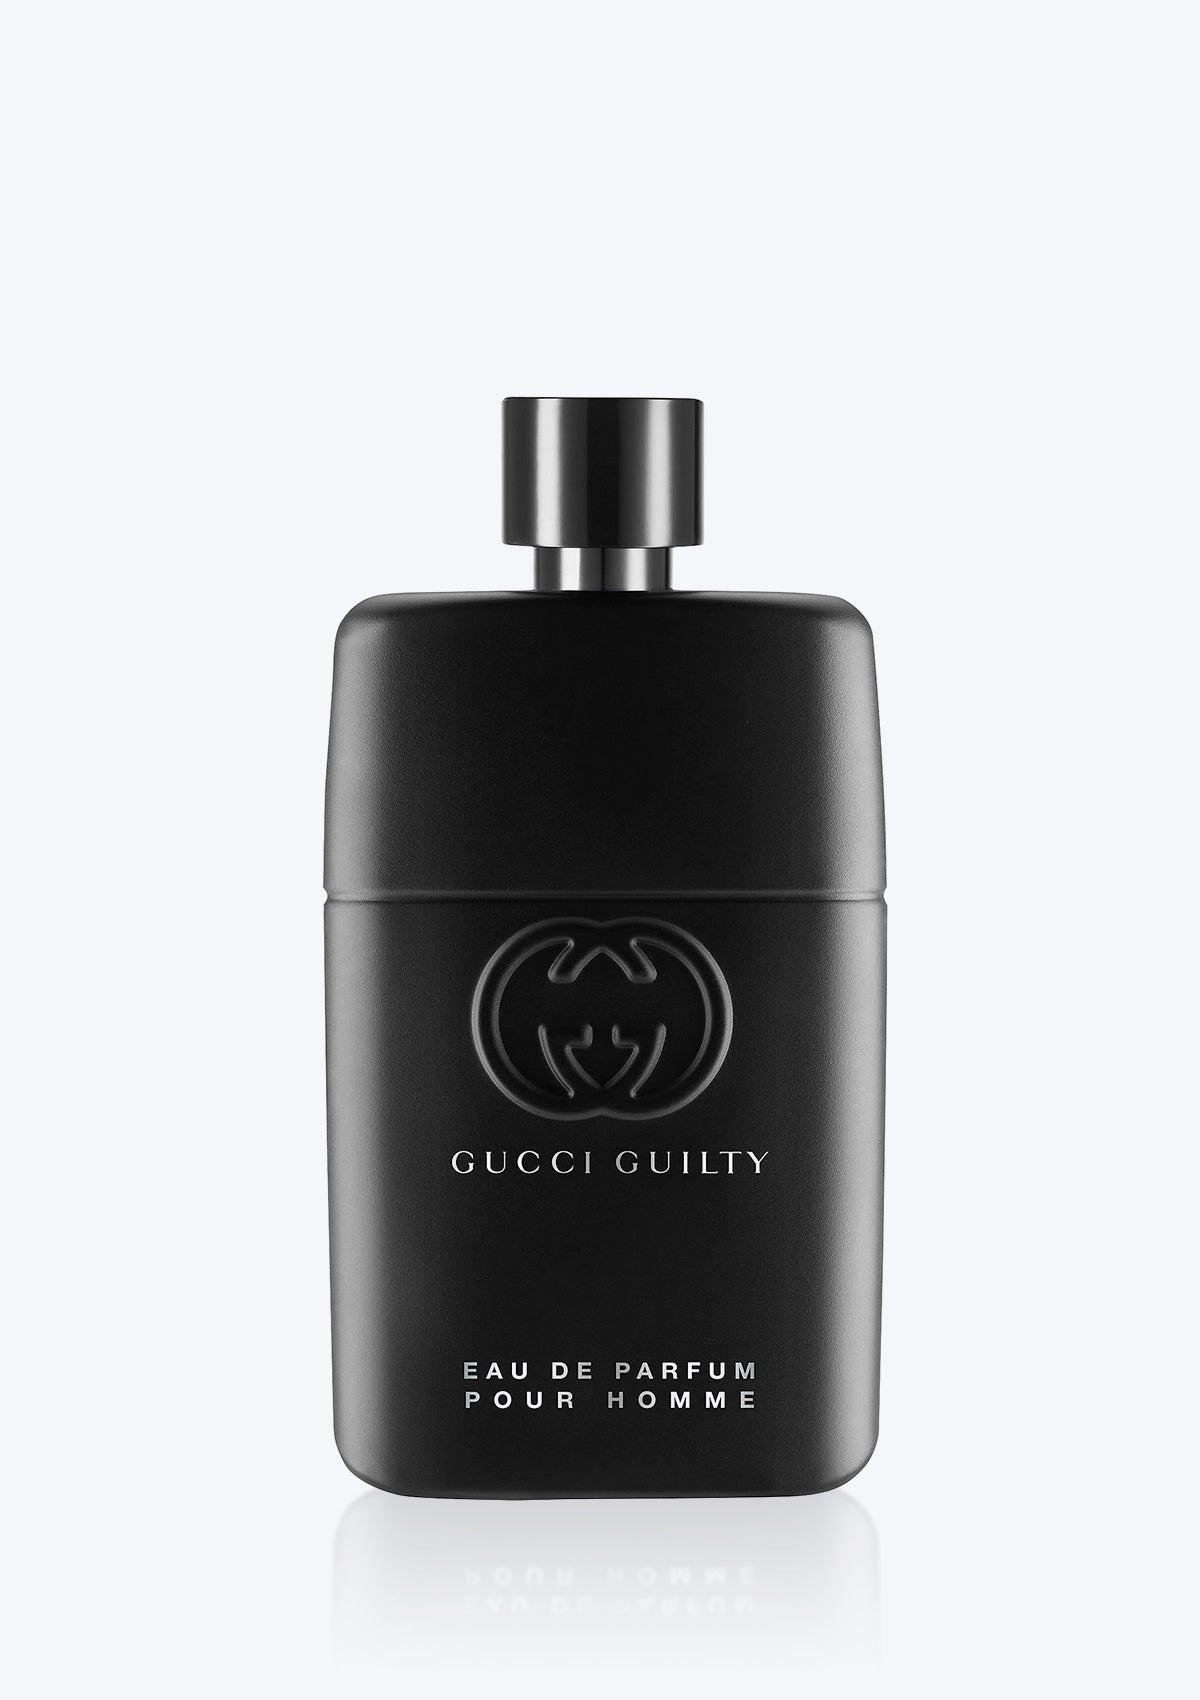 Gucci Guilty Pour Homme EDP – Paris France Beauty